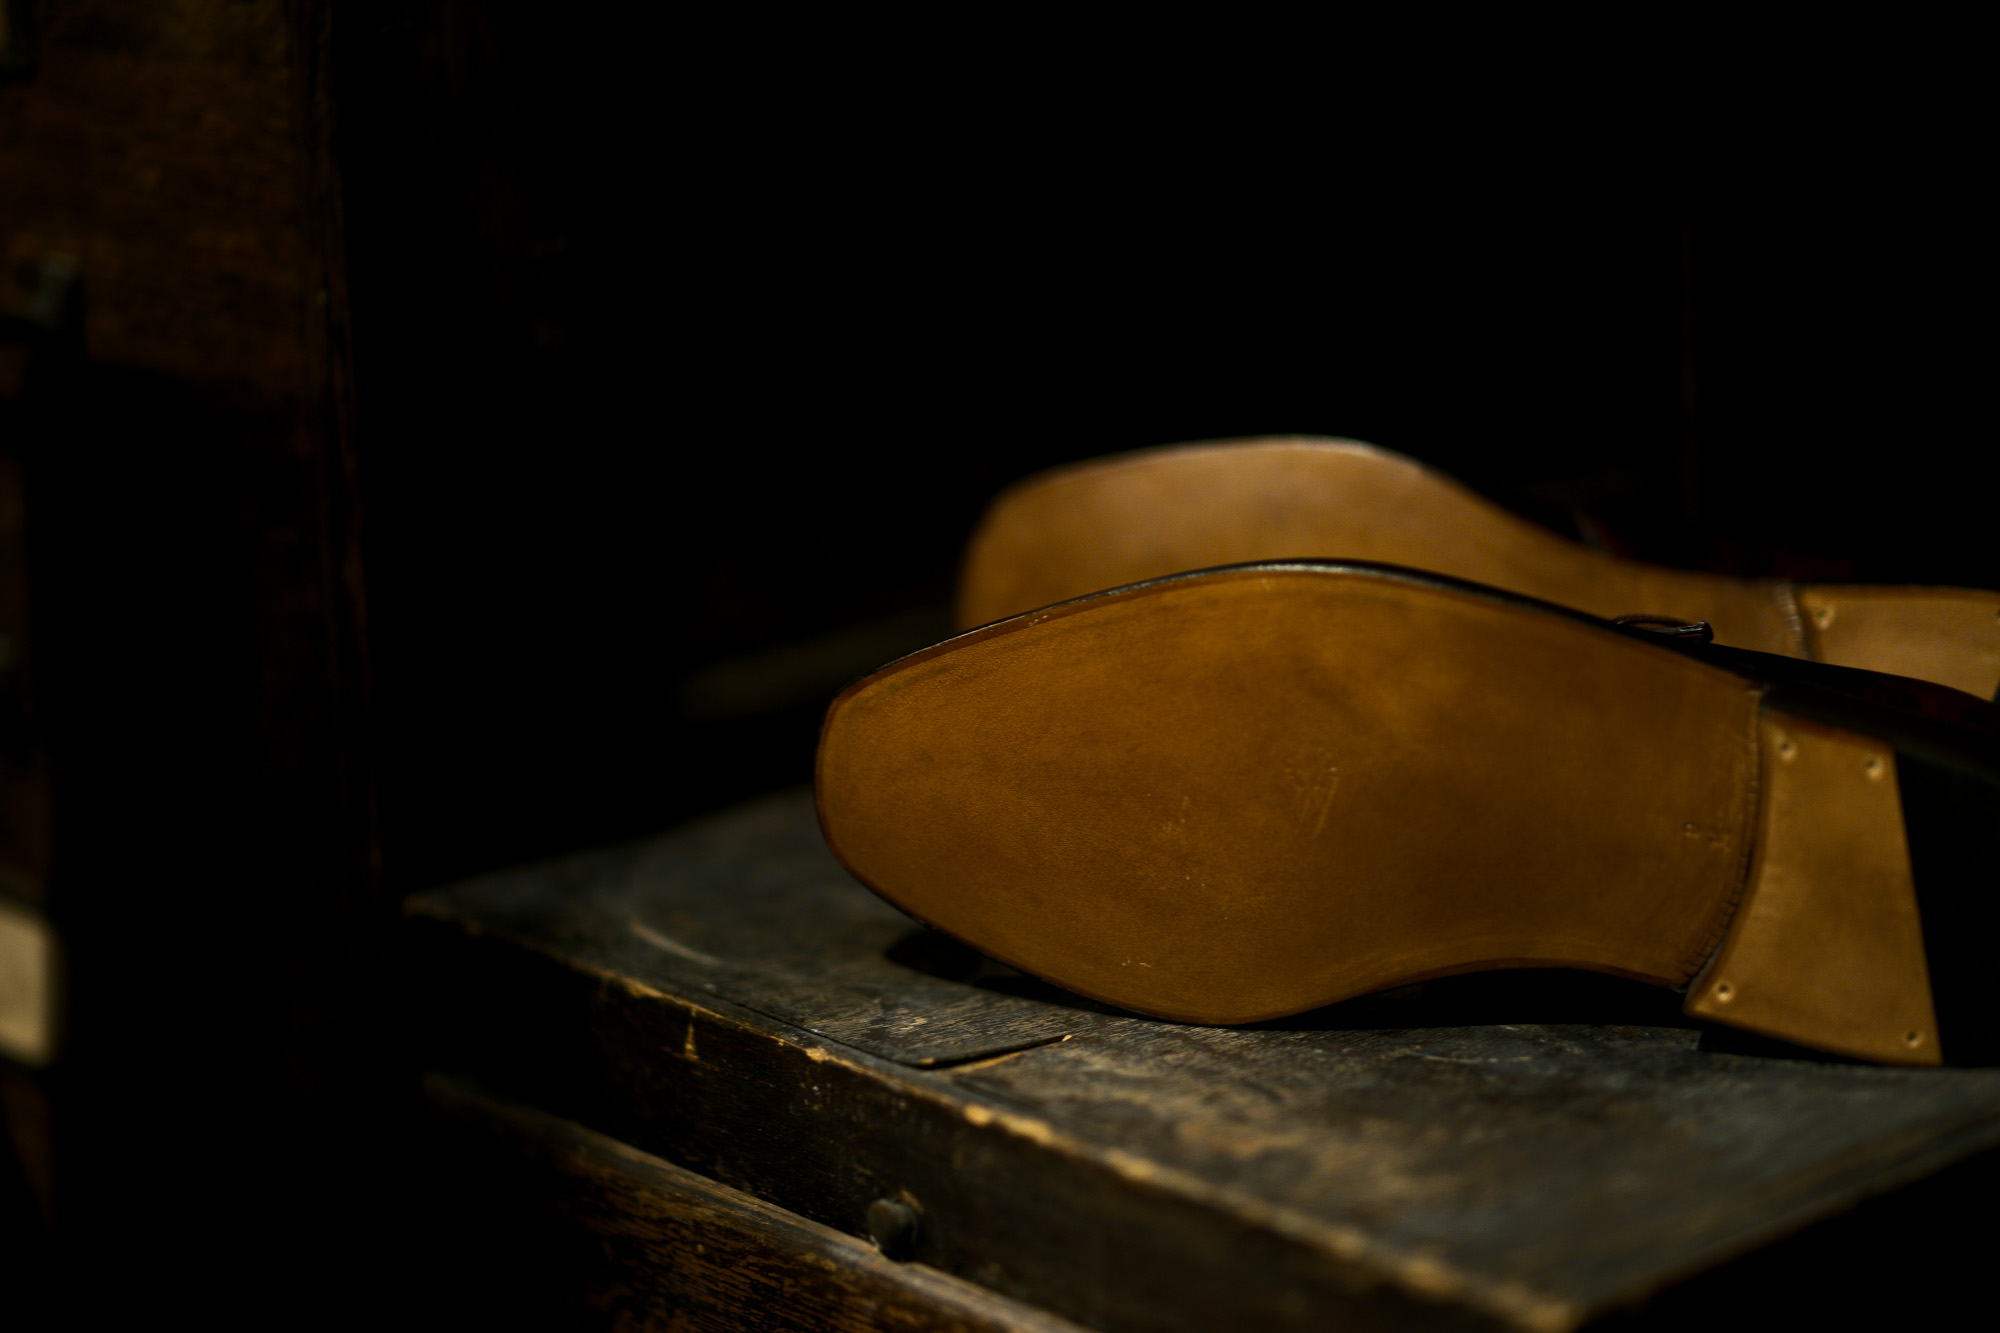 ENZO BONAFE (エンツォボナフェ) ART.3721 Single Monk Strap Shoes シングルモンクストラップシューズ MUSEUM CALF ミュージアムカーフ ドレスシューズ DARK BROWN(ダークブラウン) made in italy (イタリア製) 2021 愛知 名古屋 Alto e Diritto altoediritto アルトエデリット